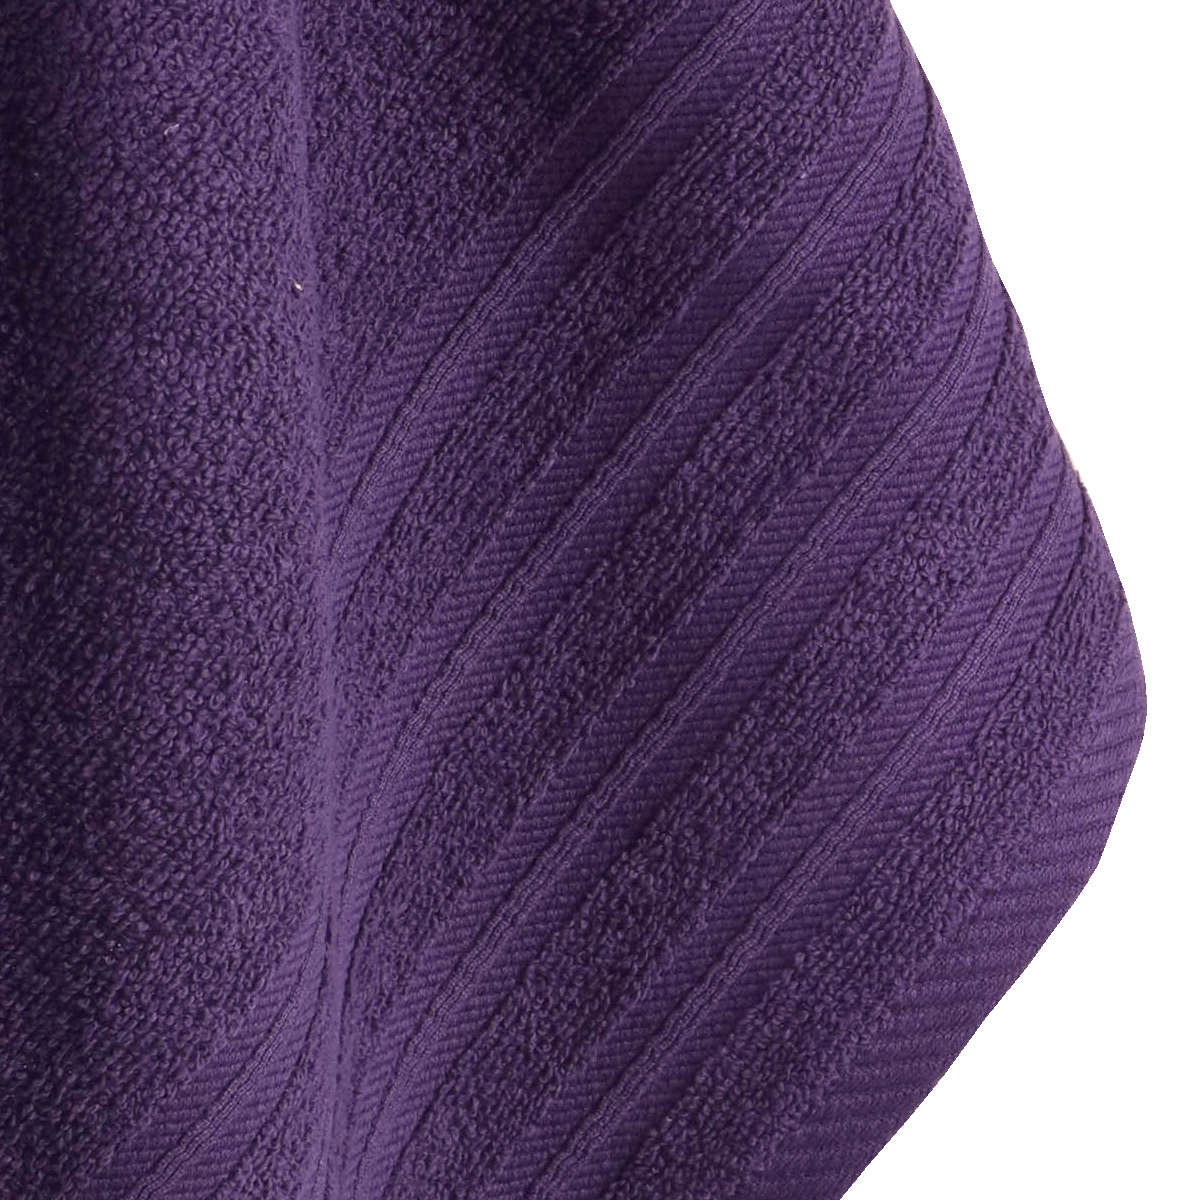 Serviette drap de bain 100% coton 450 g m² qualité Alex lila detail